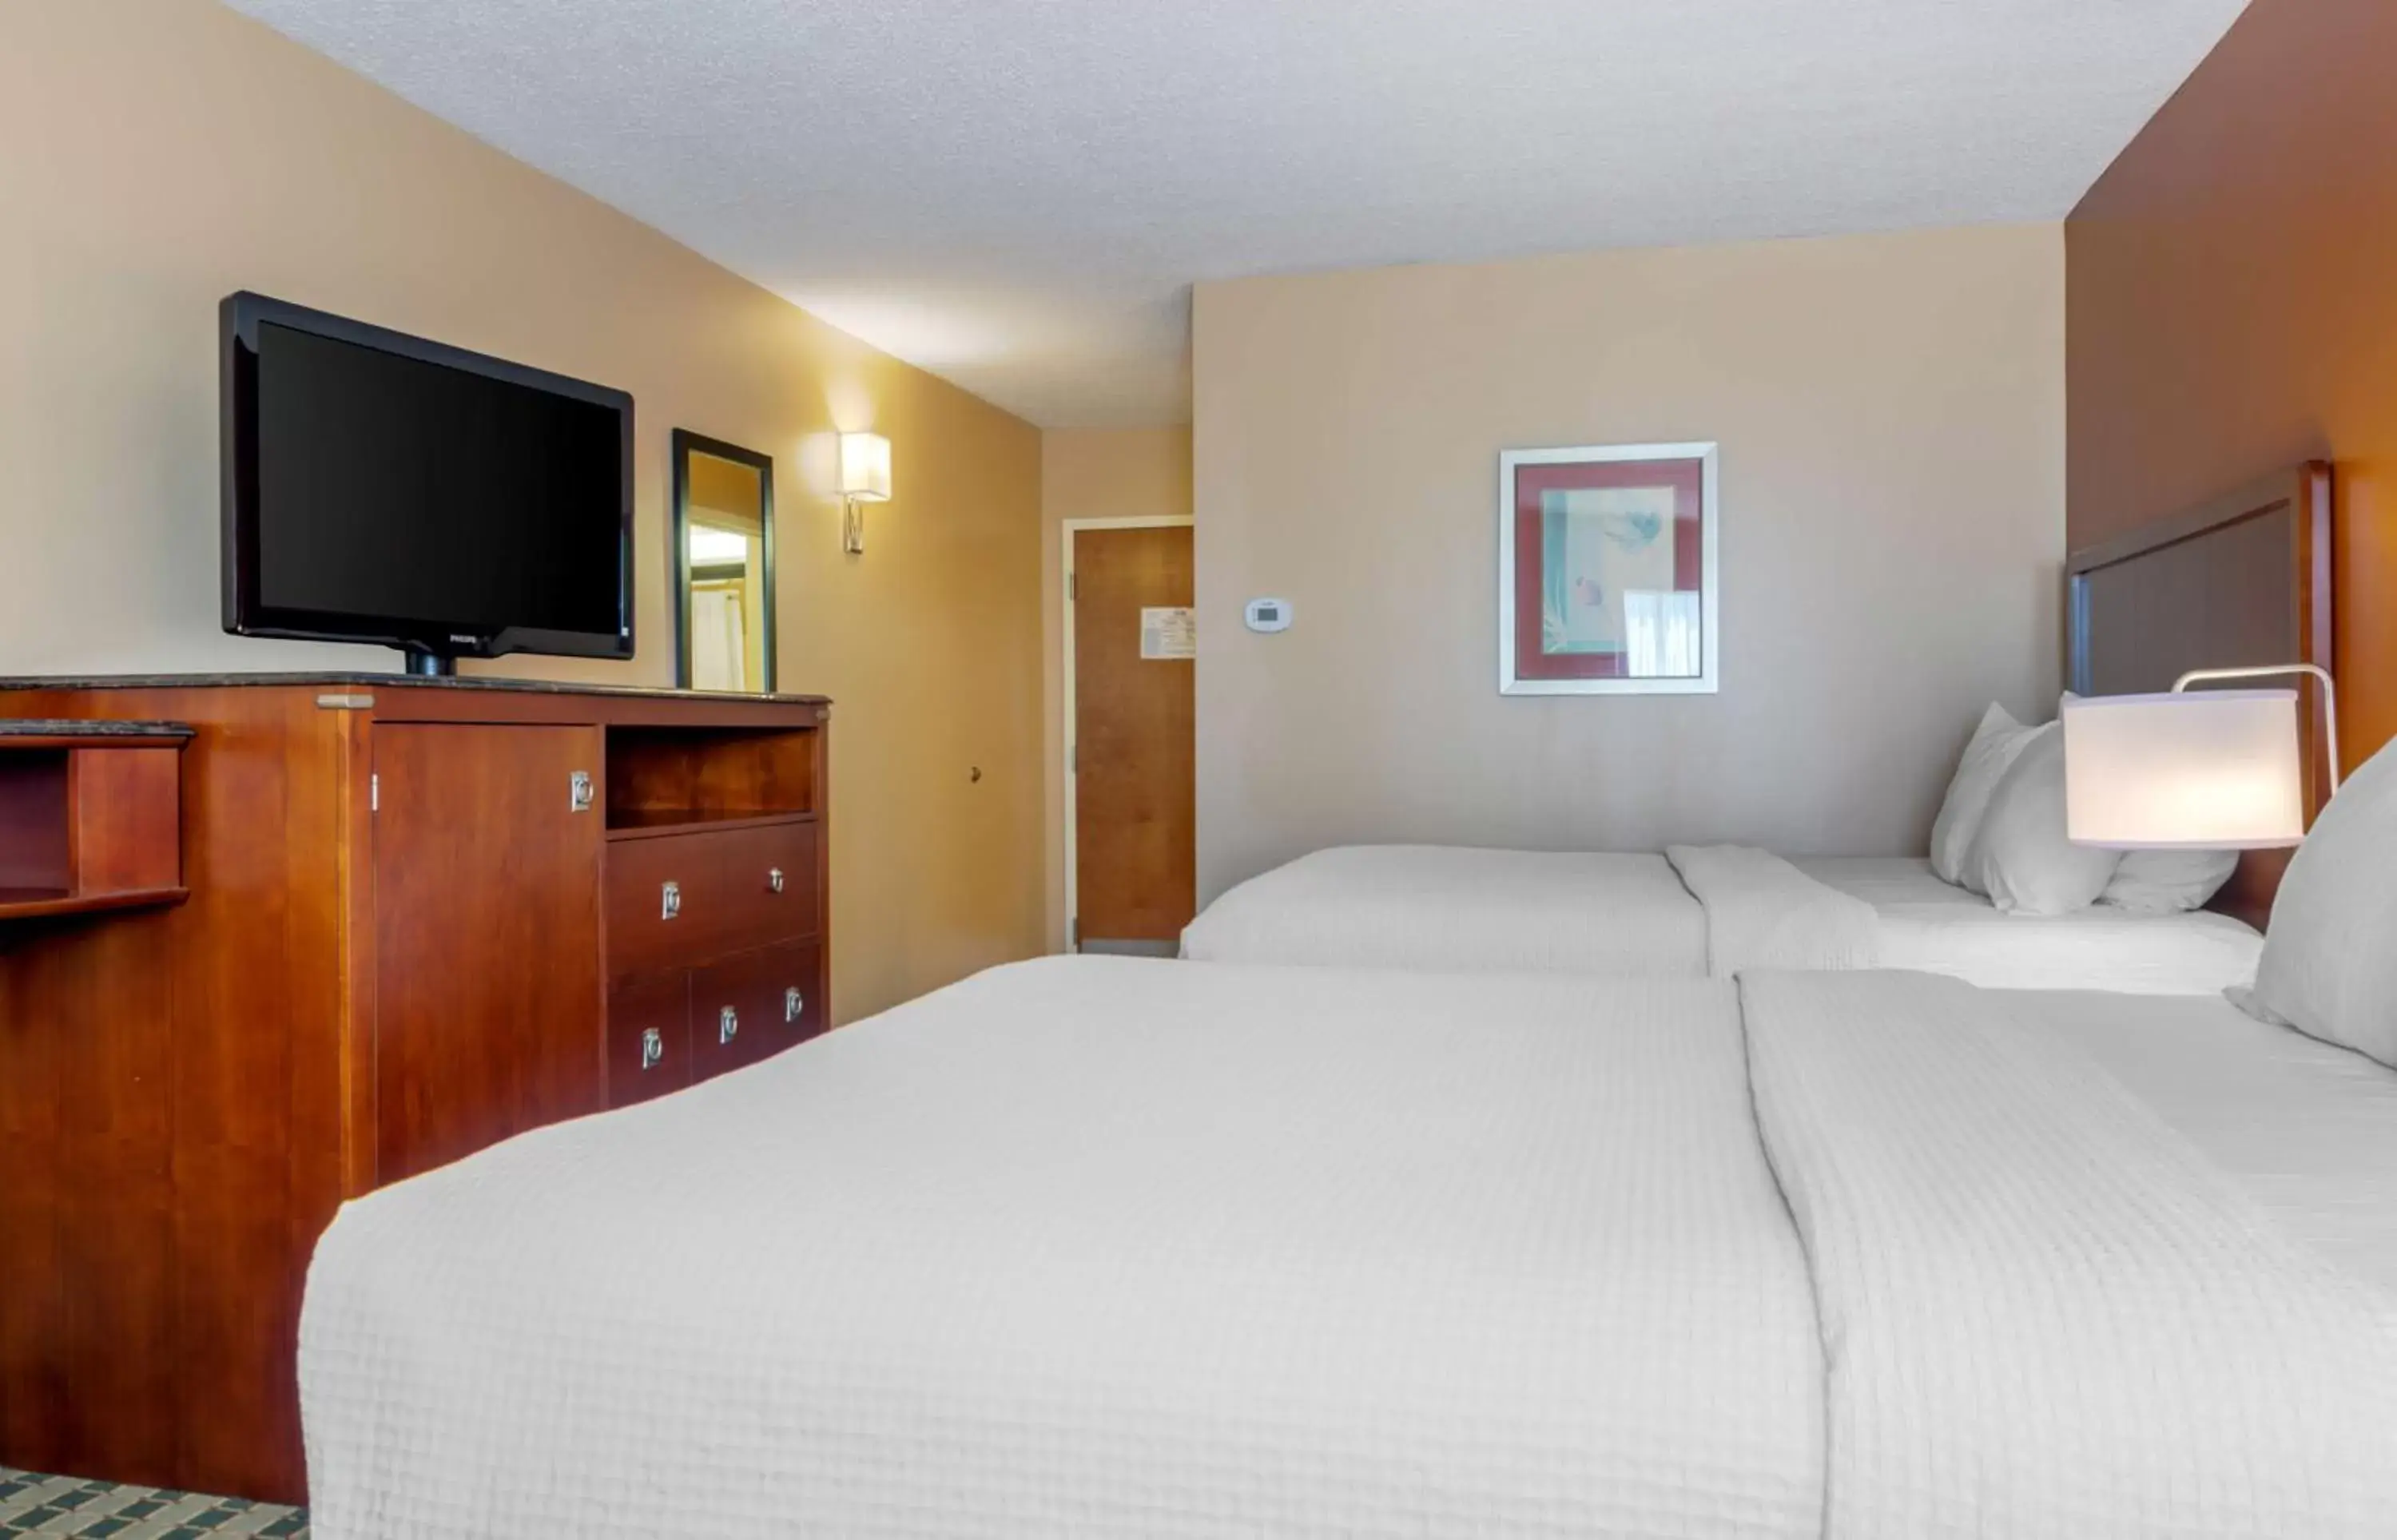 Bedroom, Bed in BEST WESTERN PLUS Inn at Valley View